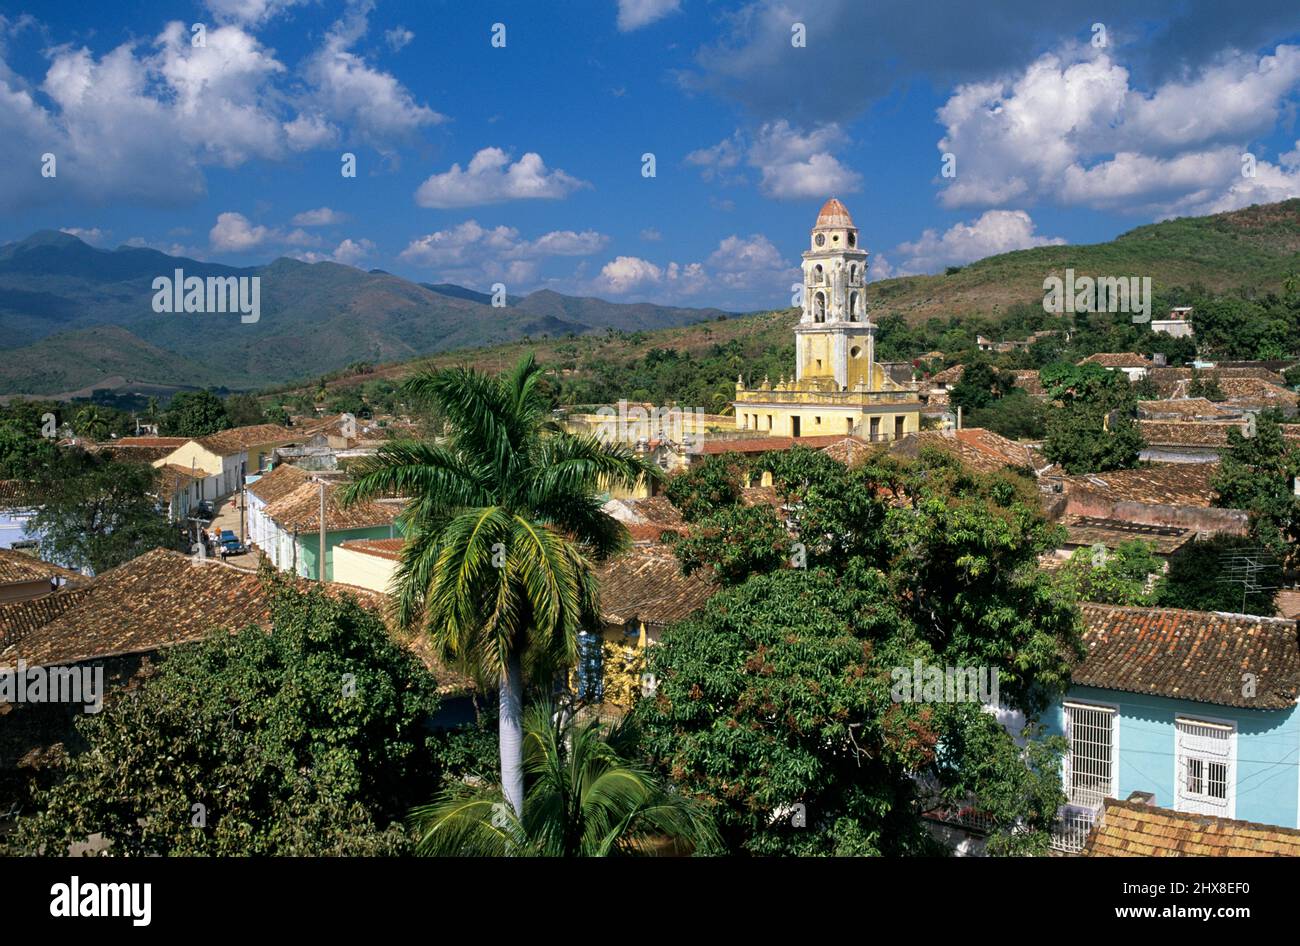 Vue sur la ville de Trinidad, région de Sancti Spiritus, Cuba Banque D'Images